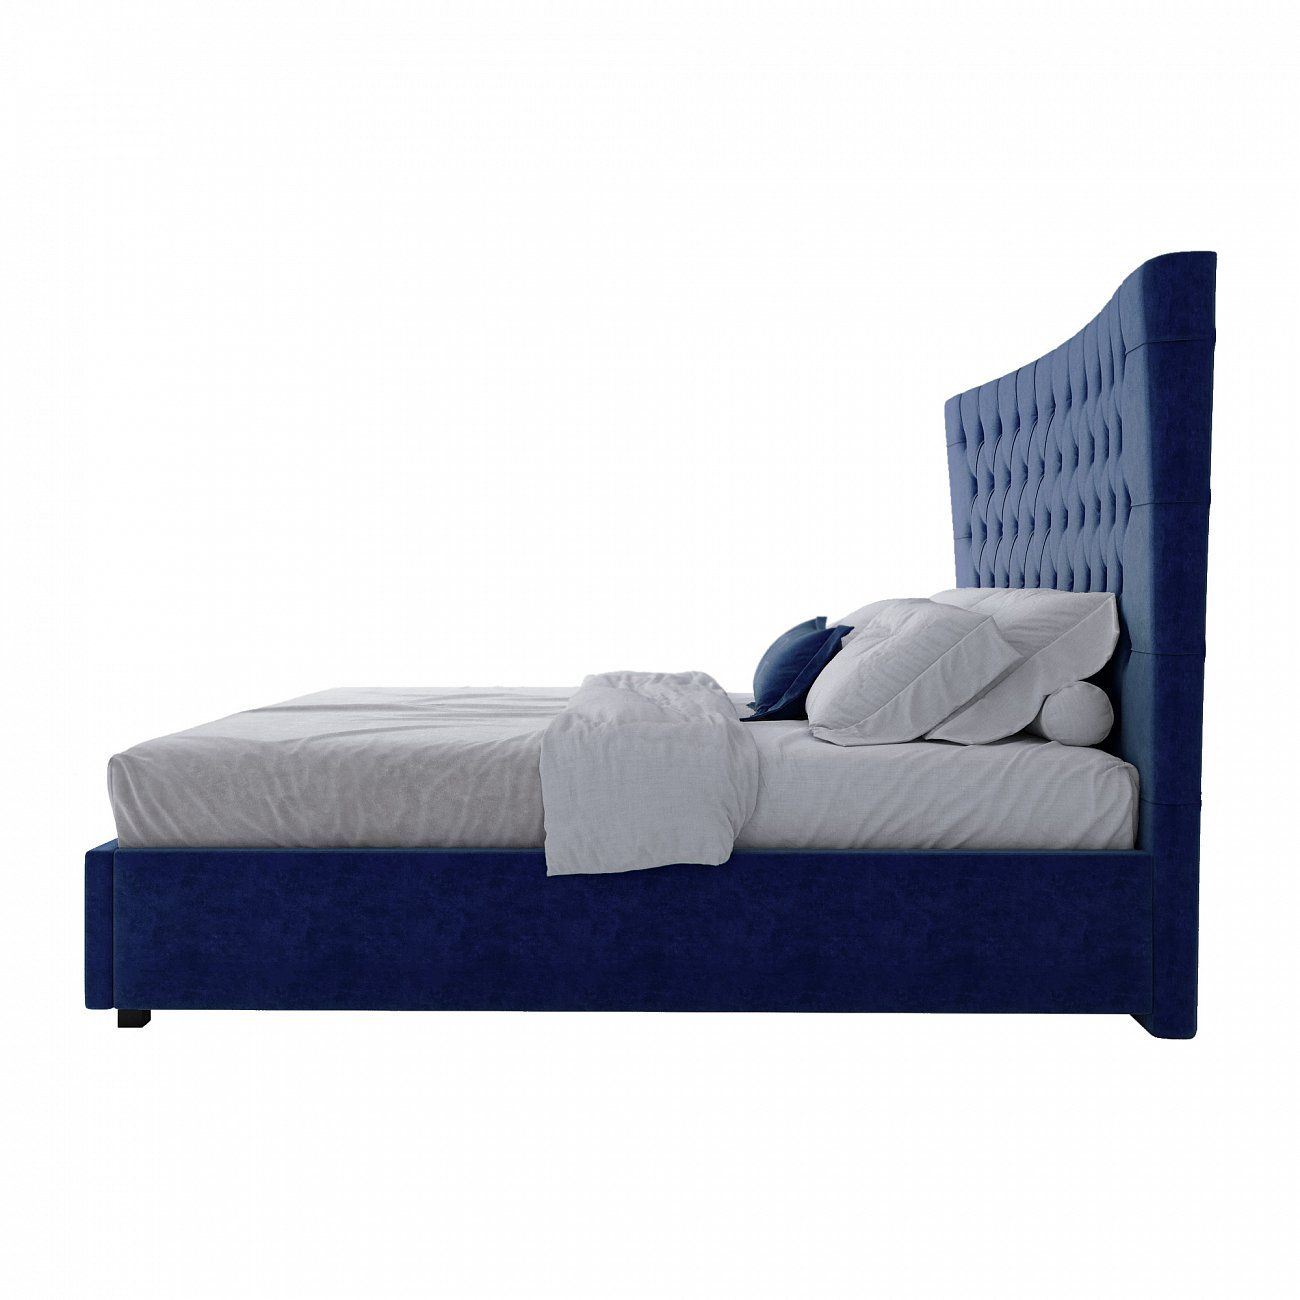 Кровать двуспальная 180х200 синяя из велюра QuickSand